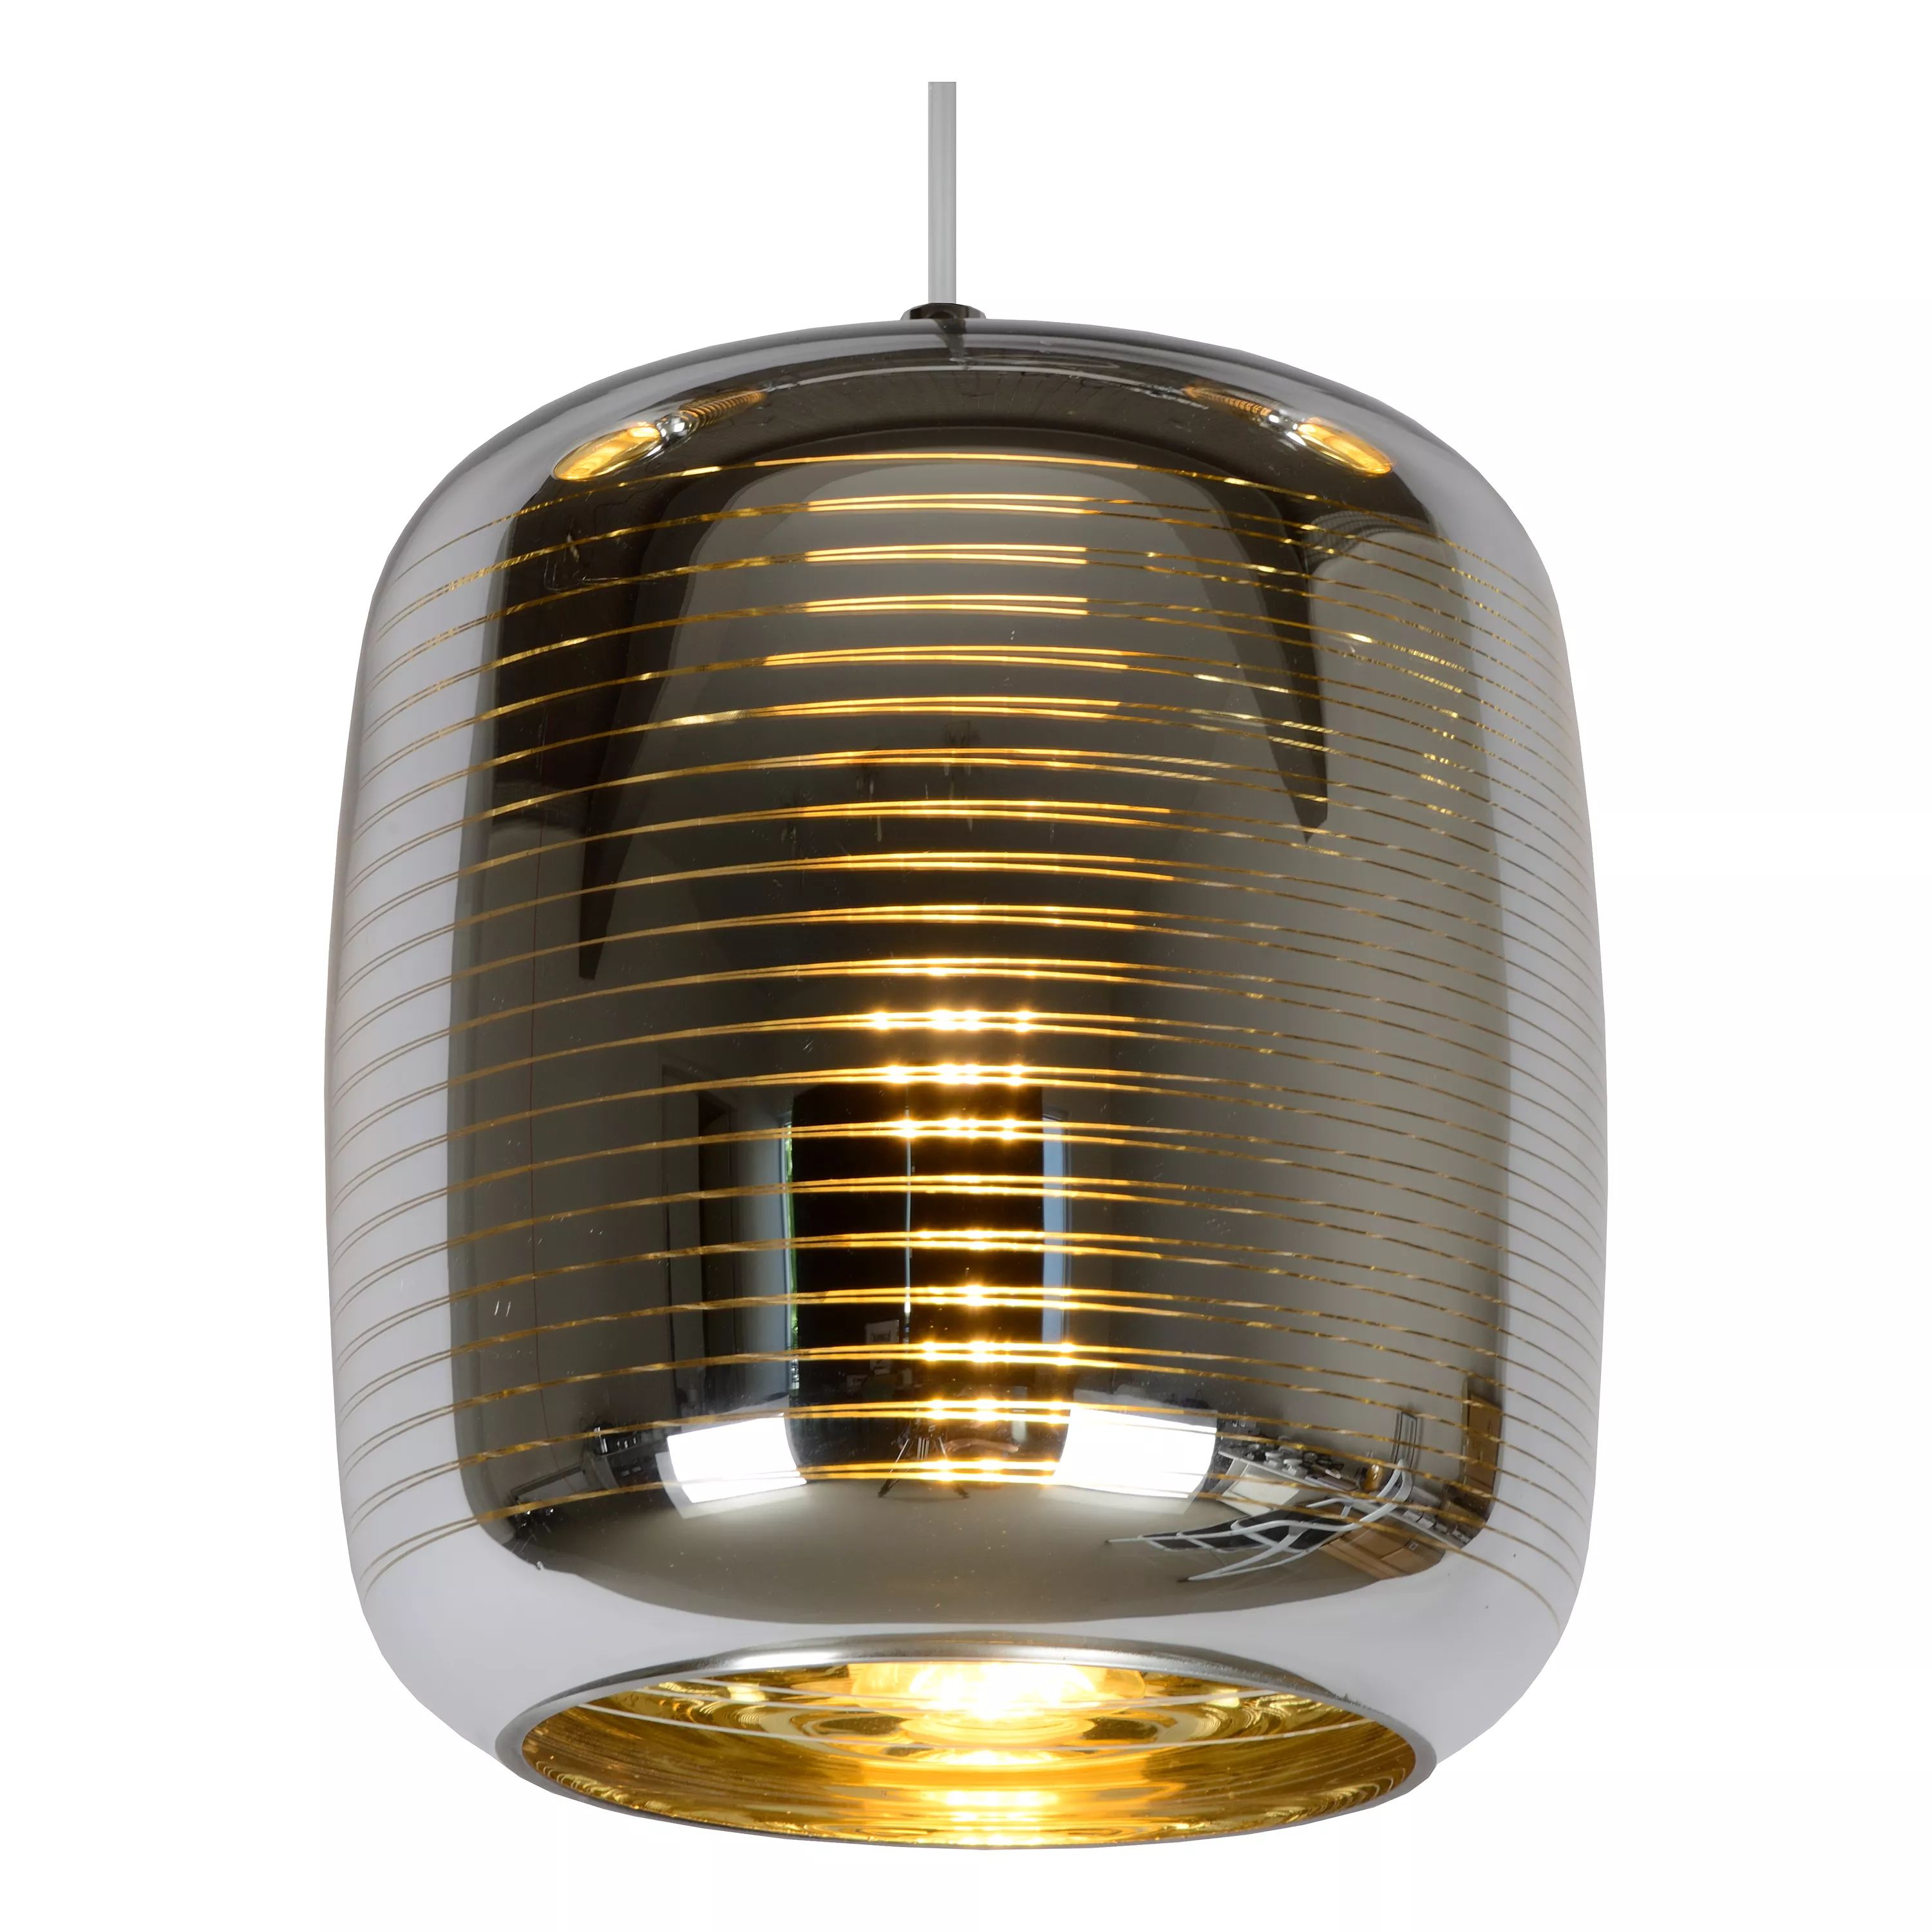 Luxusní závěsné svítidlo Eryn v kombinaci zlaté barvy a chromu s pruhovaným vzorem.